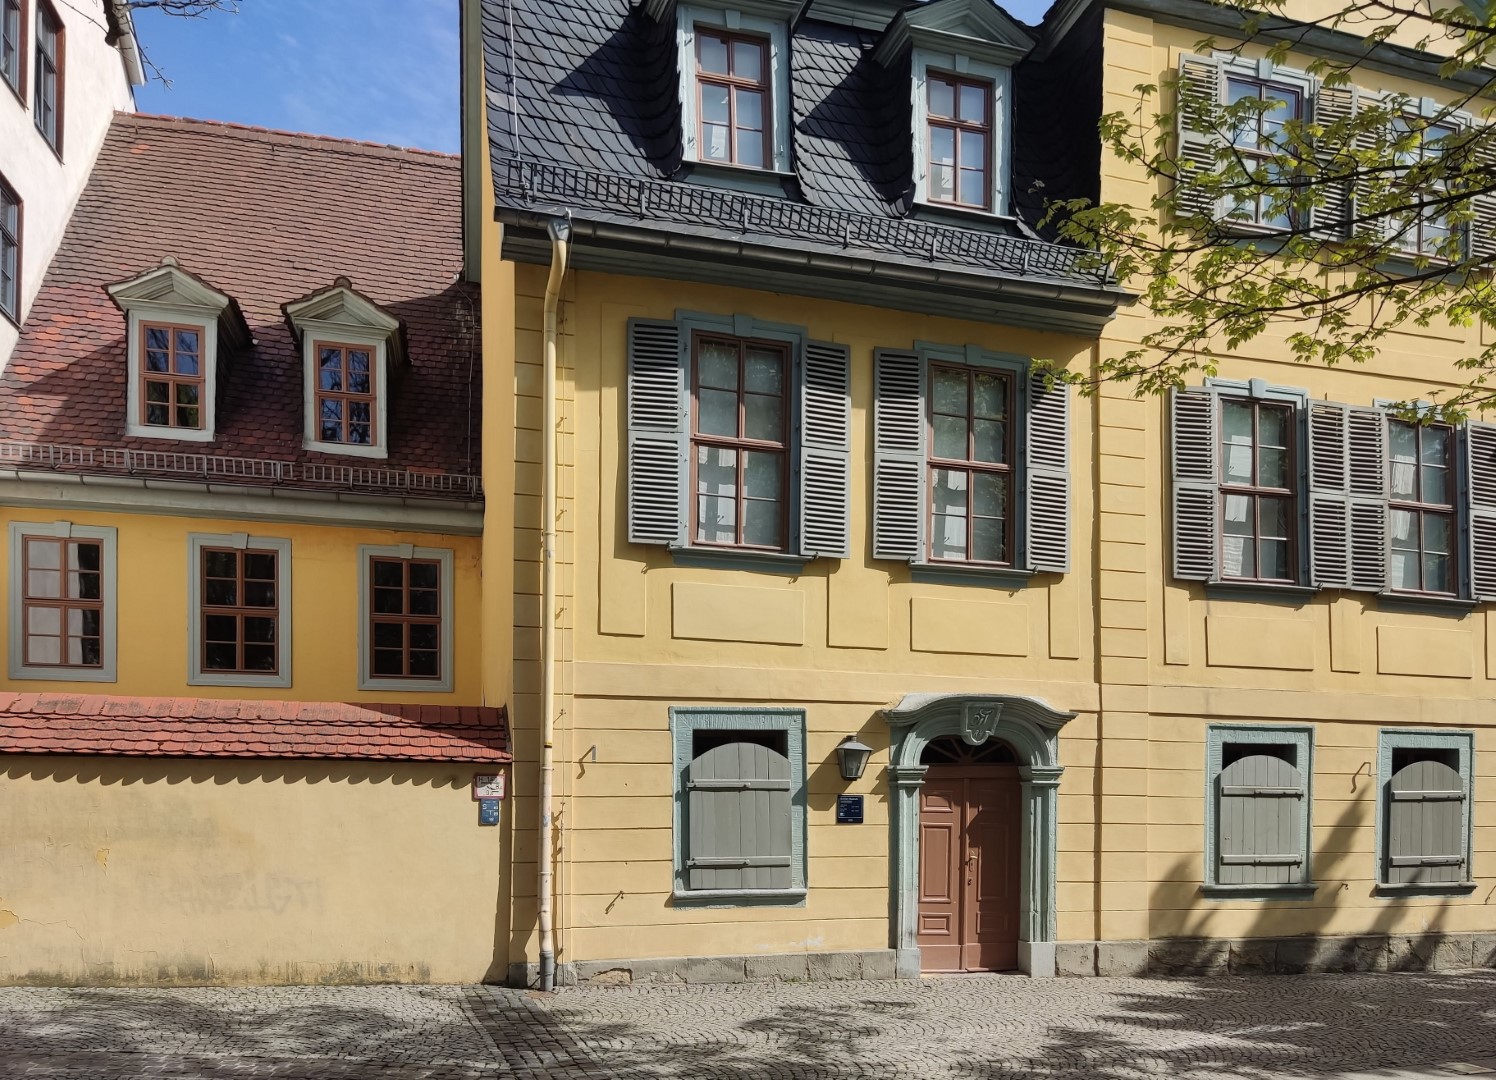 35 Wohnhaus von Friedrich Schiller, er war aber nicht Zuhause